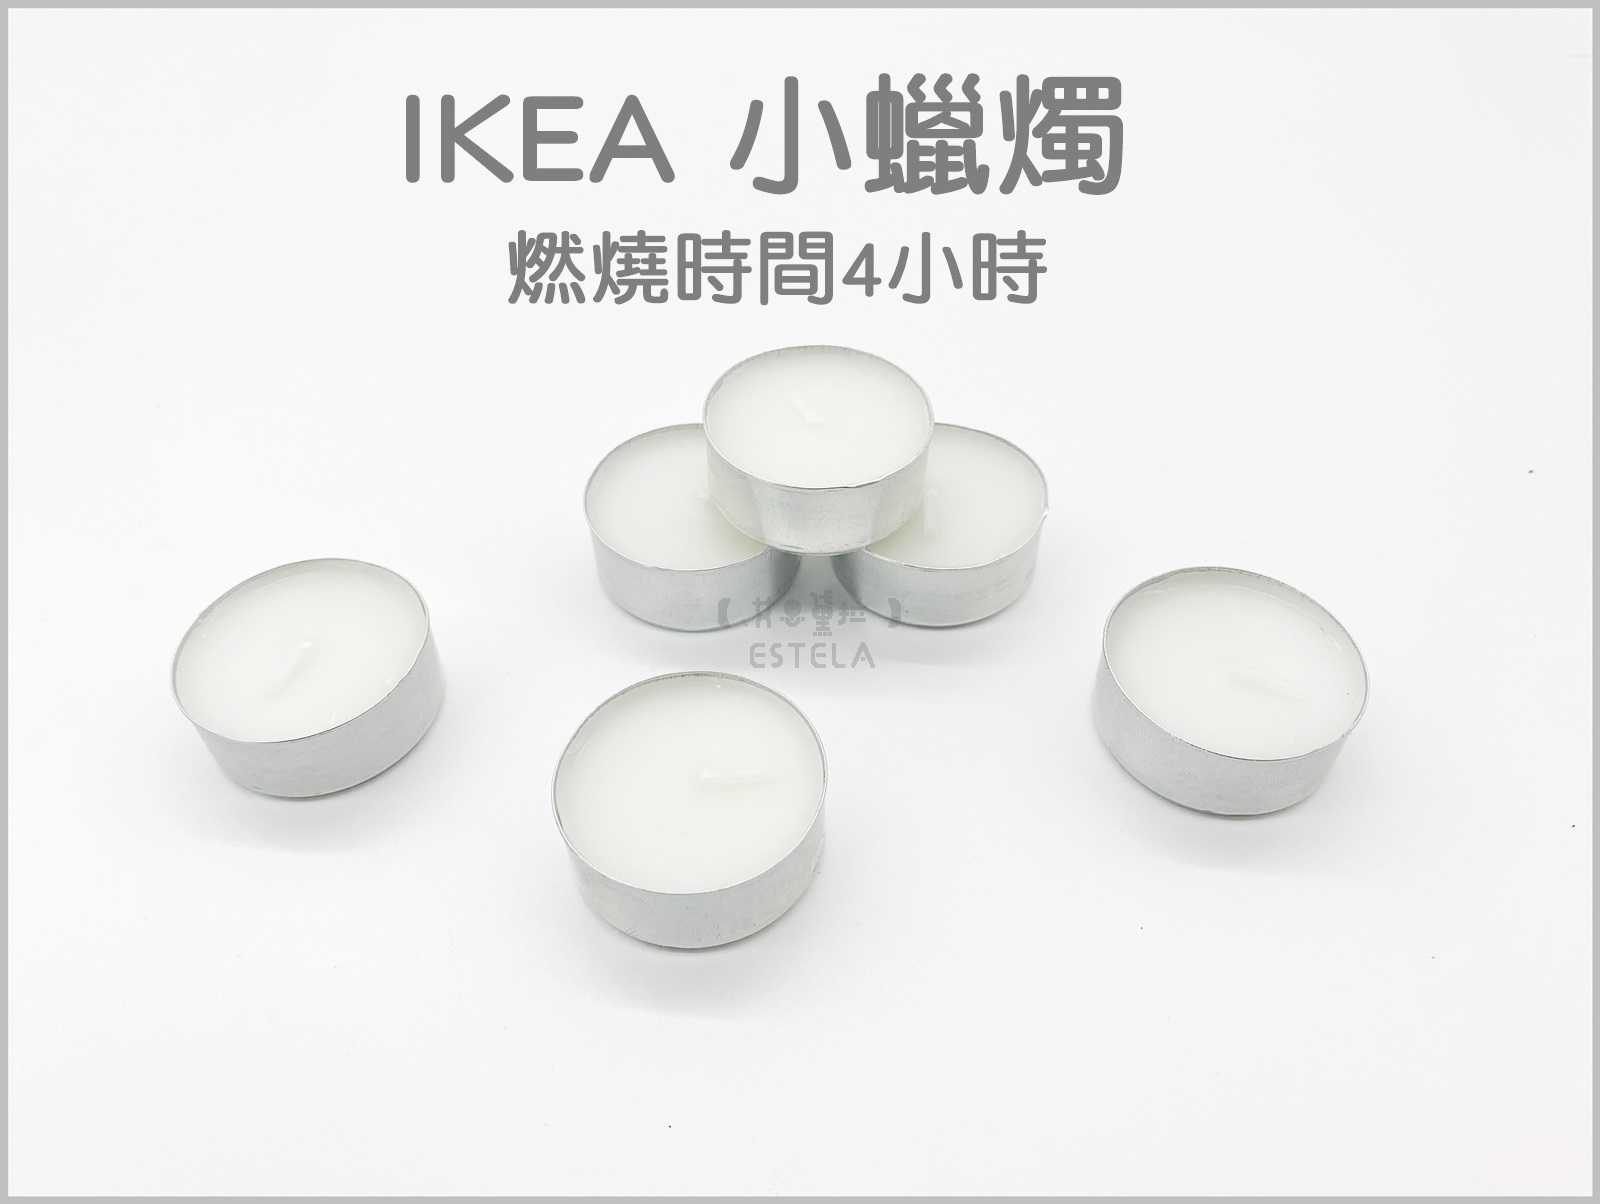 【艾思黛拉 A0125】現貨 IKEA 小蠟燭 全新 4小時 求婚 情人節 告白 婚禮 排字 浪漫 創意 防風 蠟燭